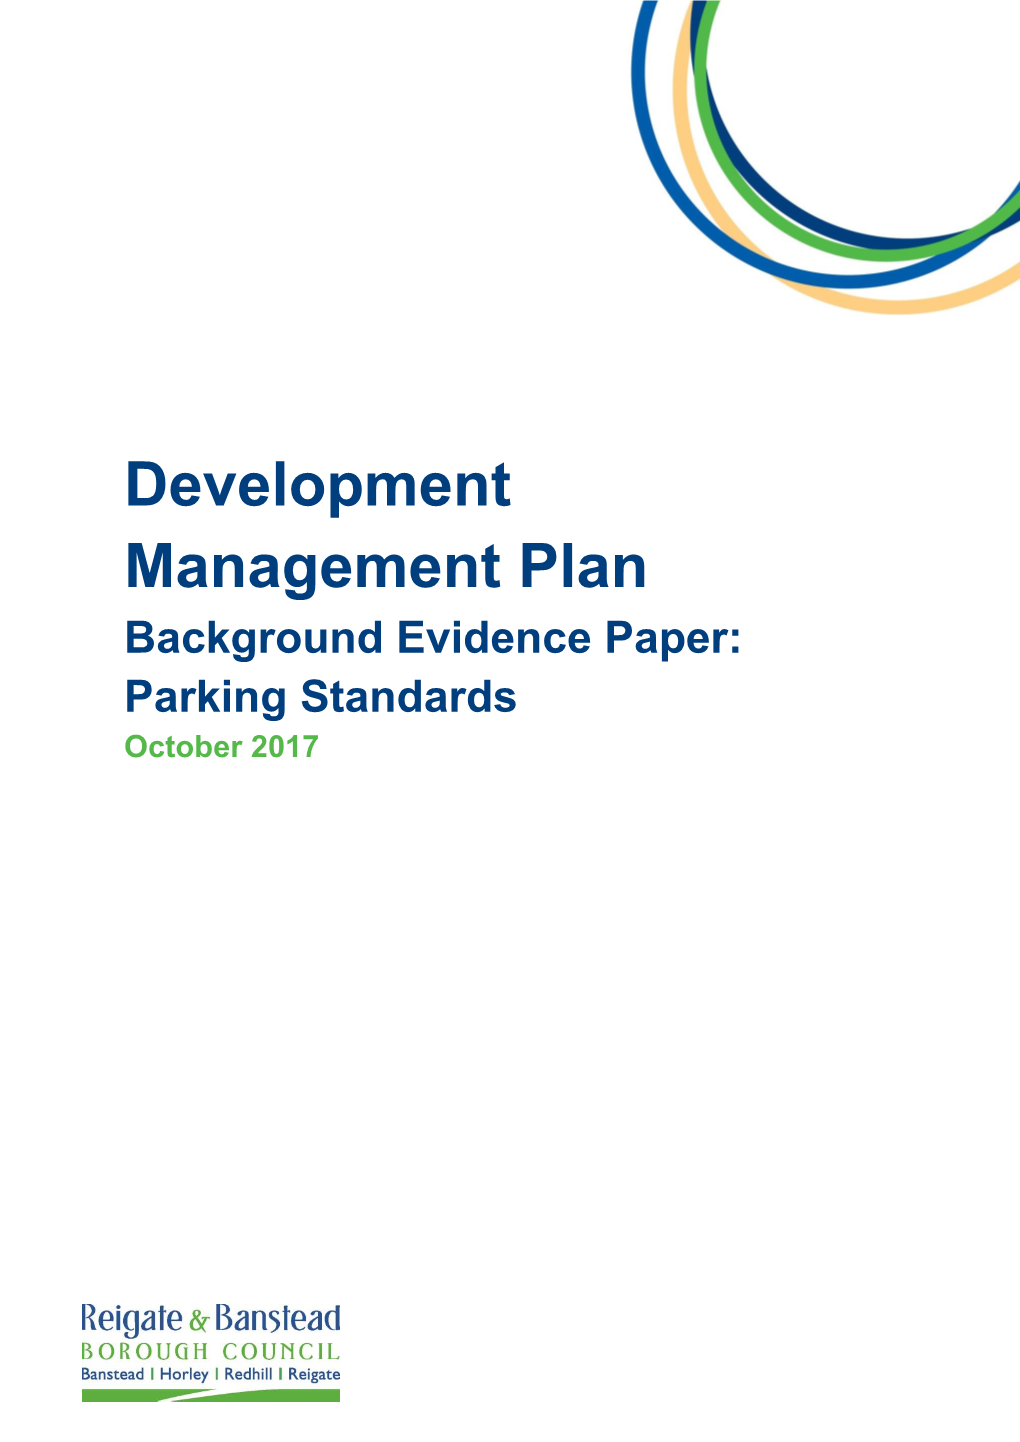 Development Management Plan Background Evidence Paper: Parking Standards October 2017